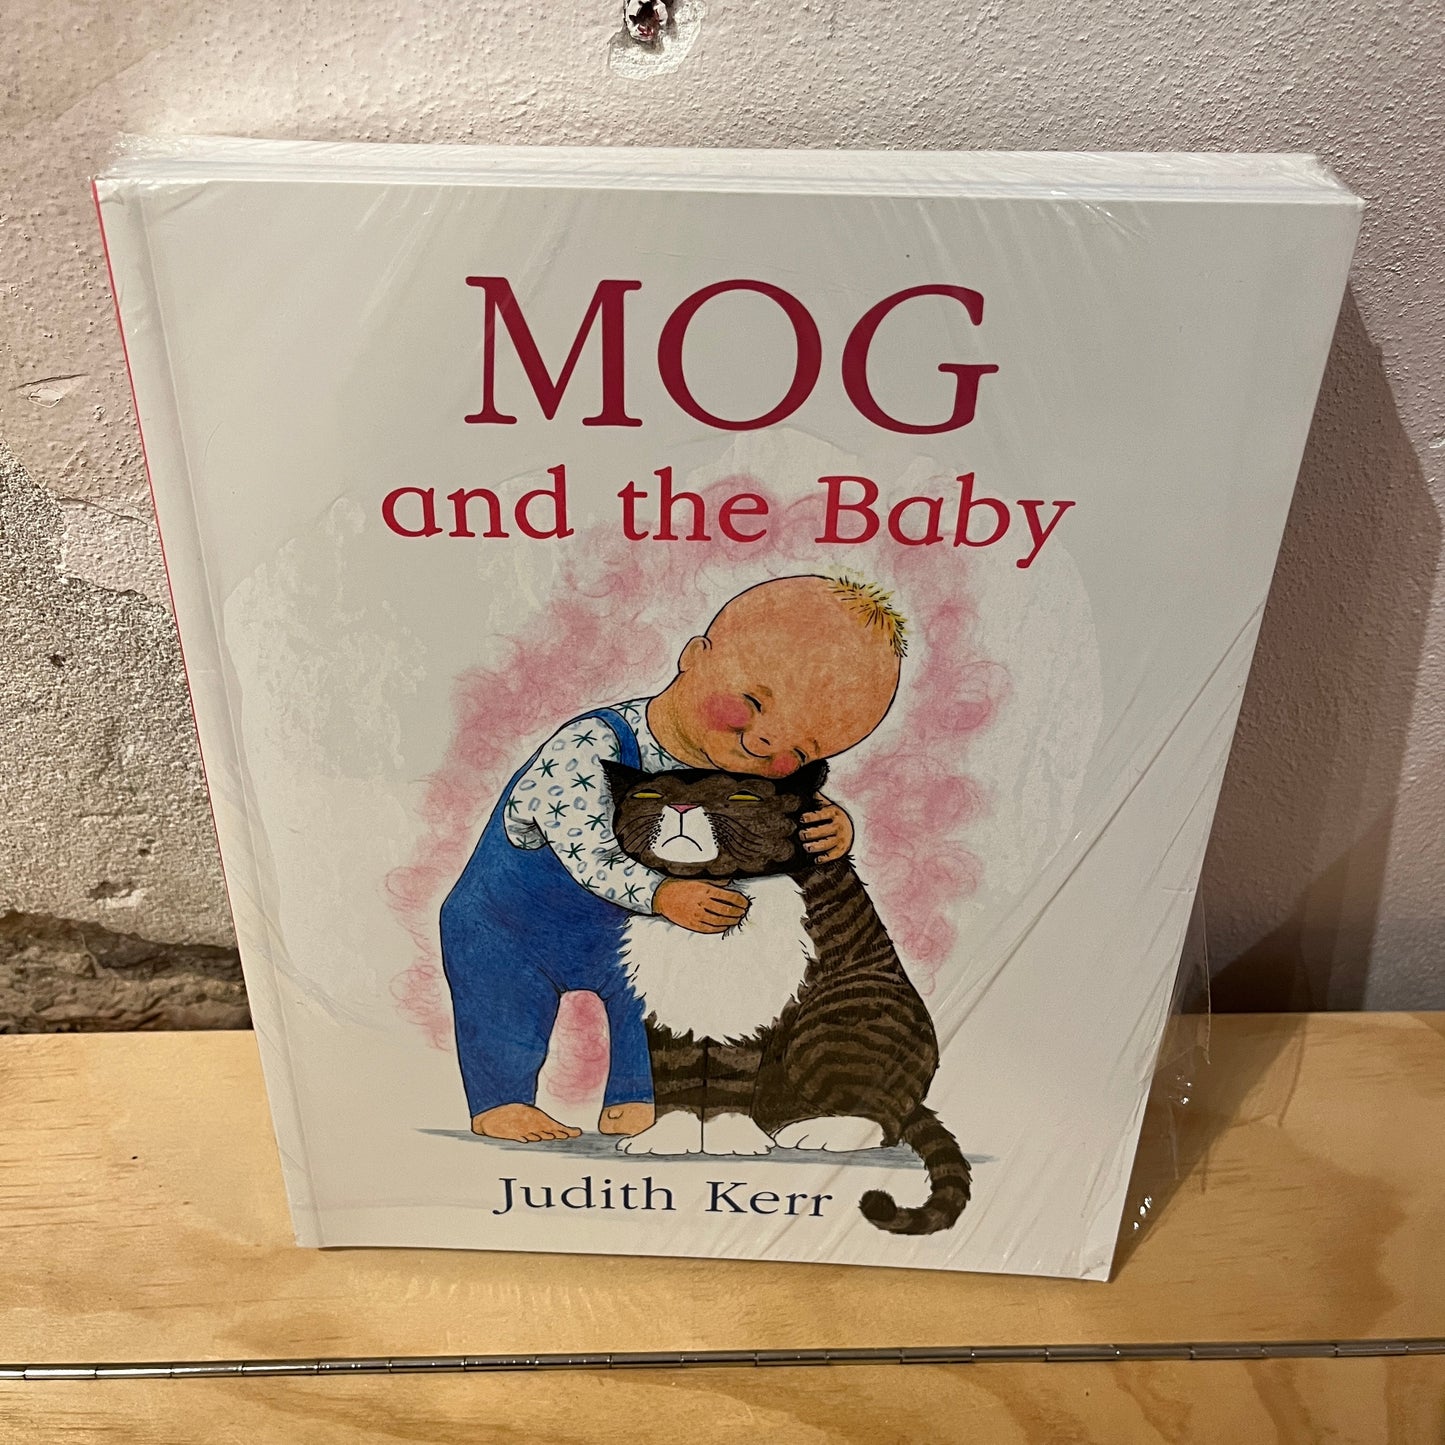 Mog the Cat (8-book set) - Judith Kerr